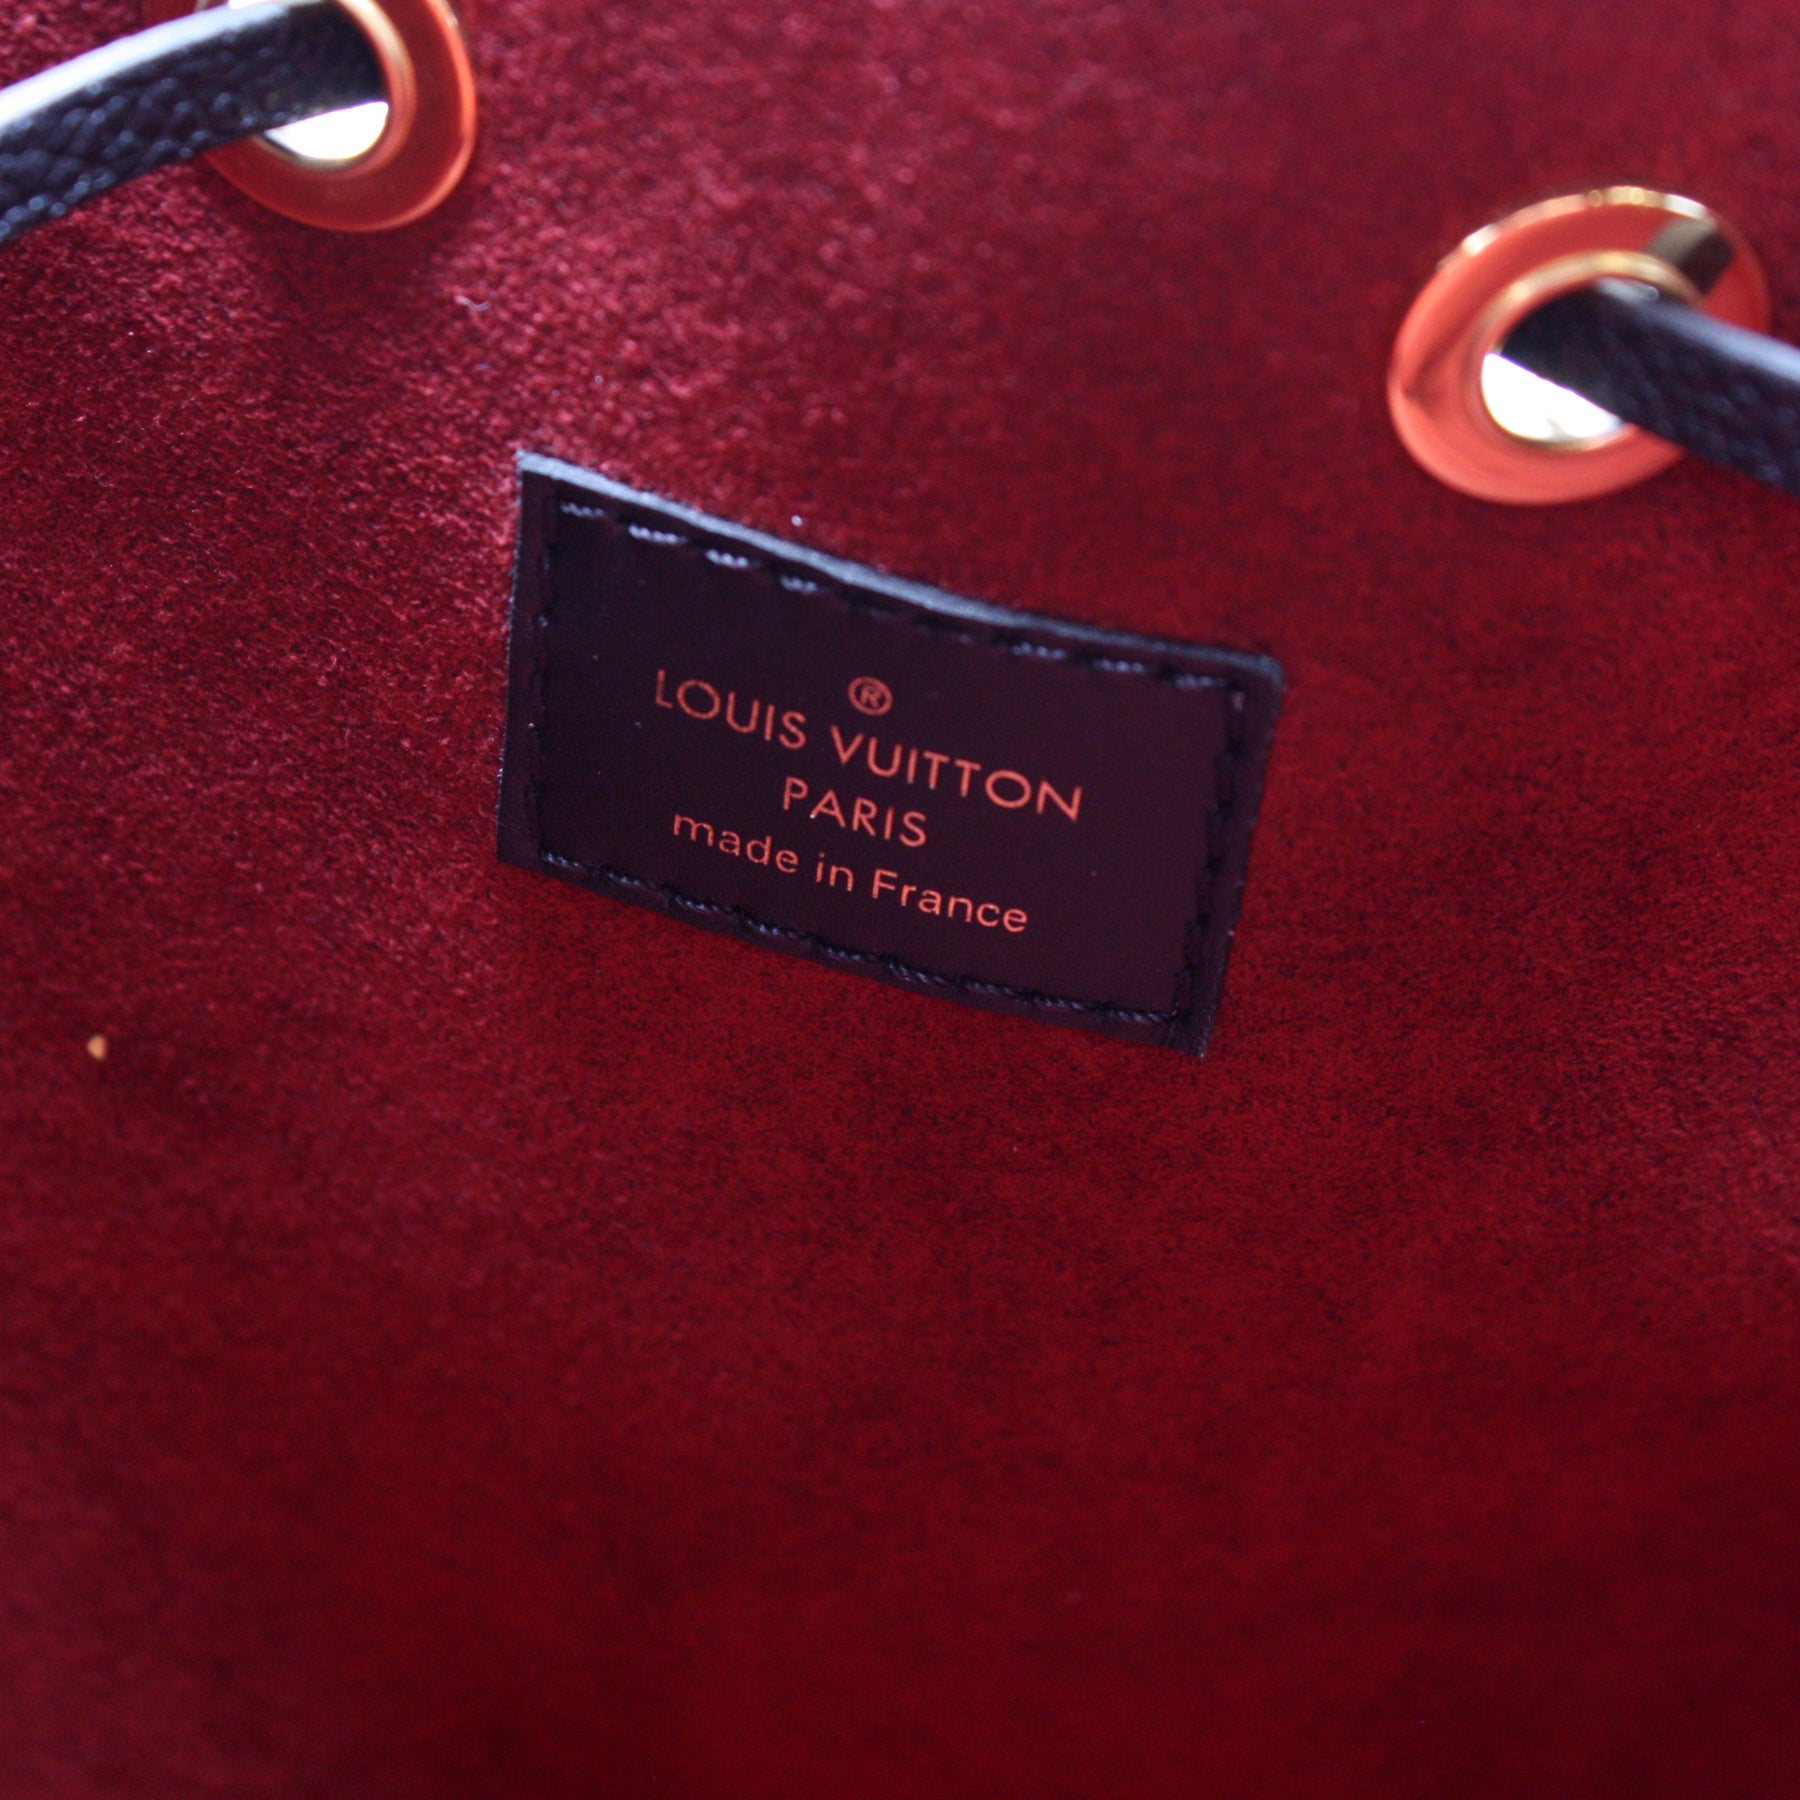 Neonoe MM Giant Broderies Empreinte – Keeks Designer Handbags